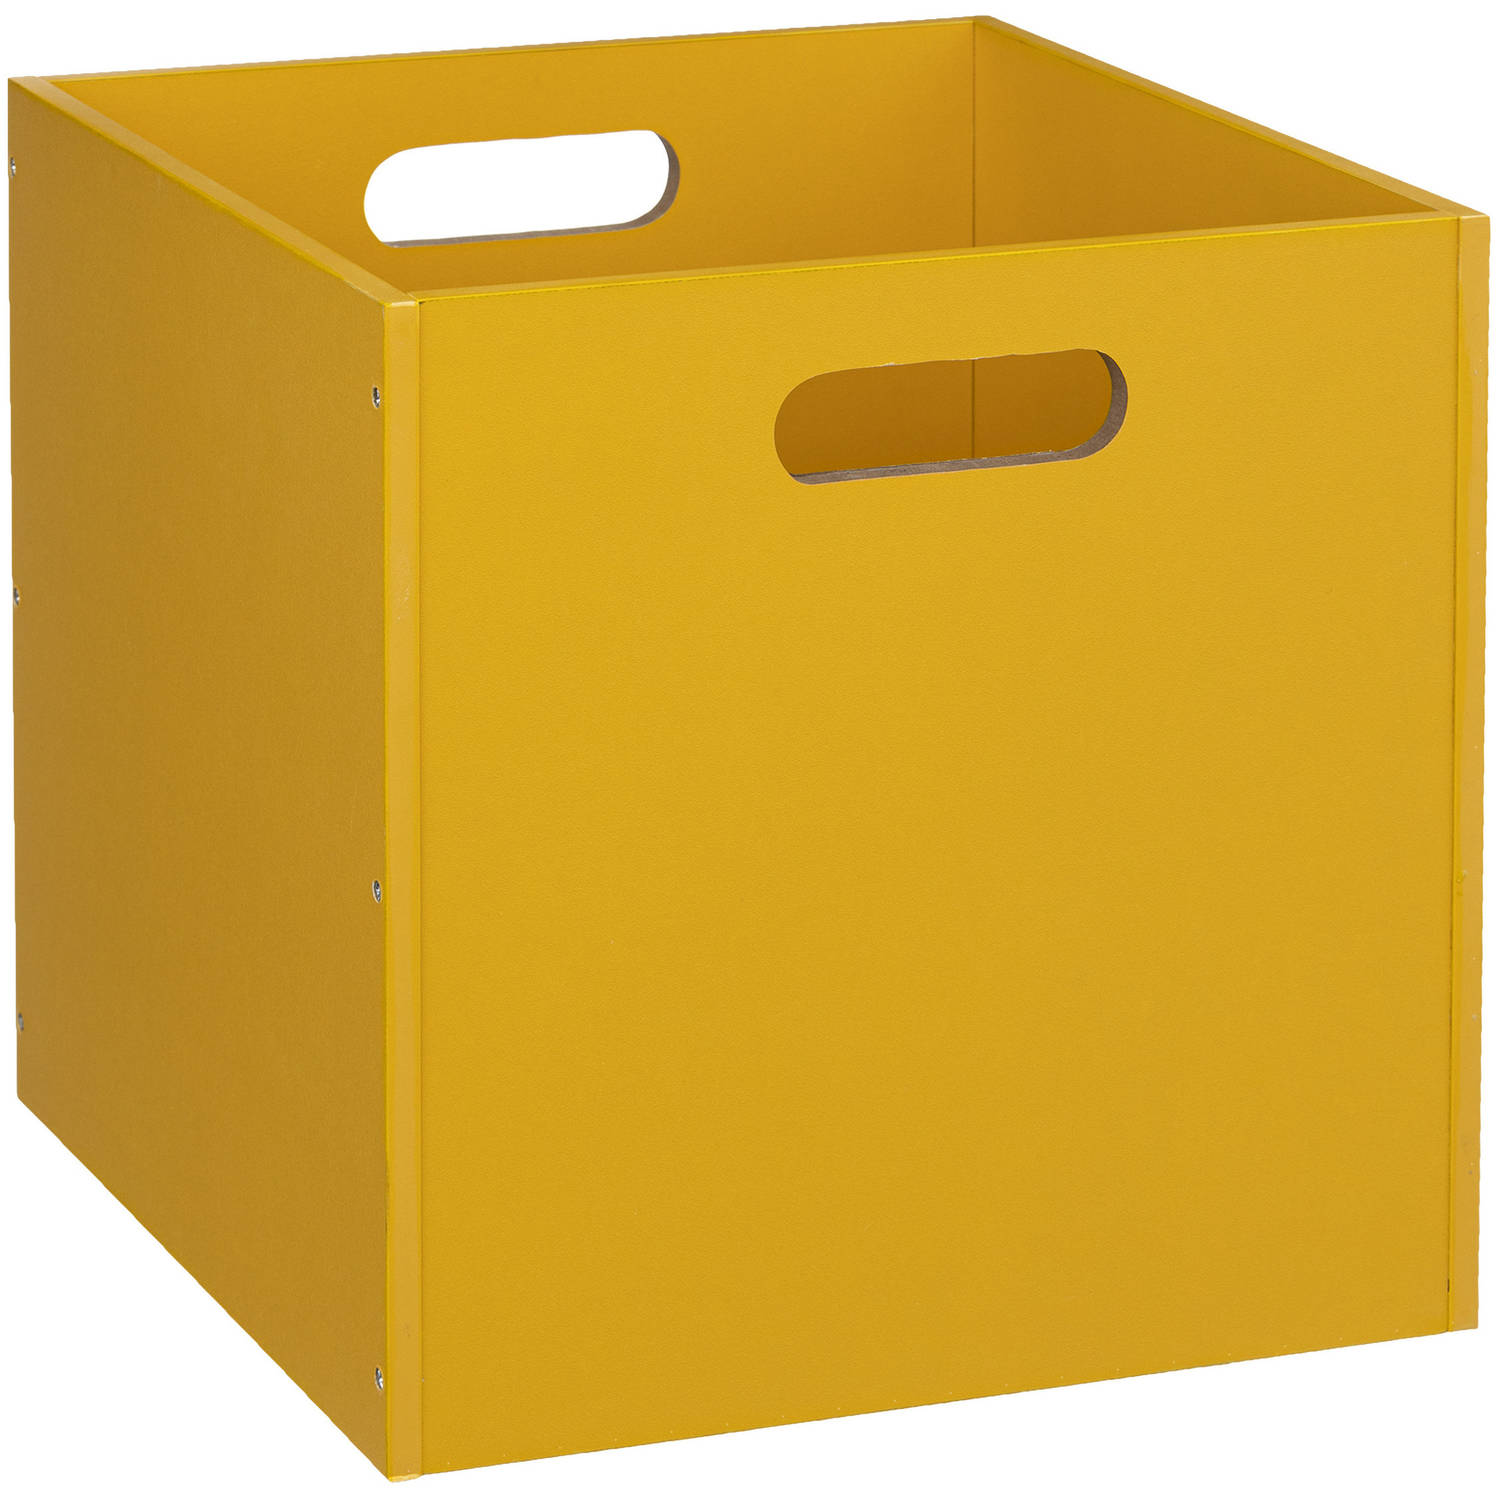 Opbergmand/kastmand 29 liter geel van hout 31 x 31 x 31 cm - Opbergboxen - Vakkenkast manden